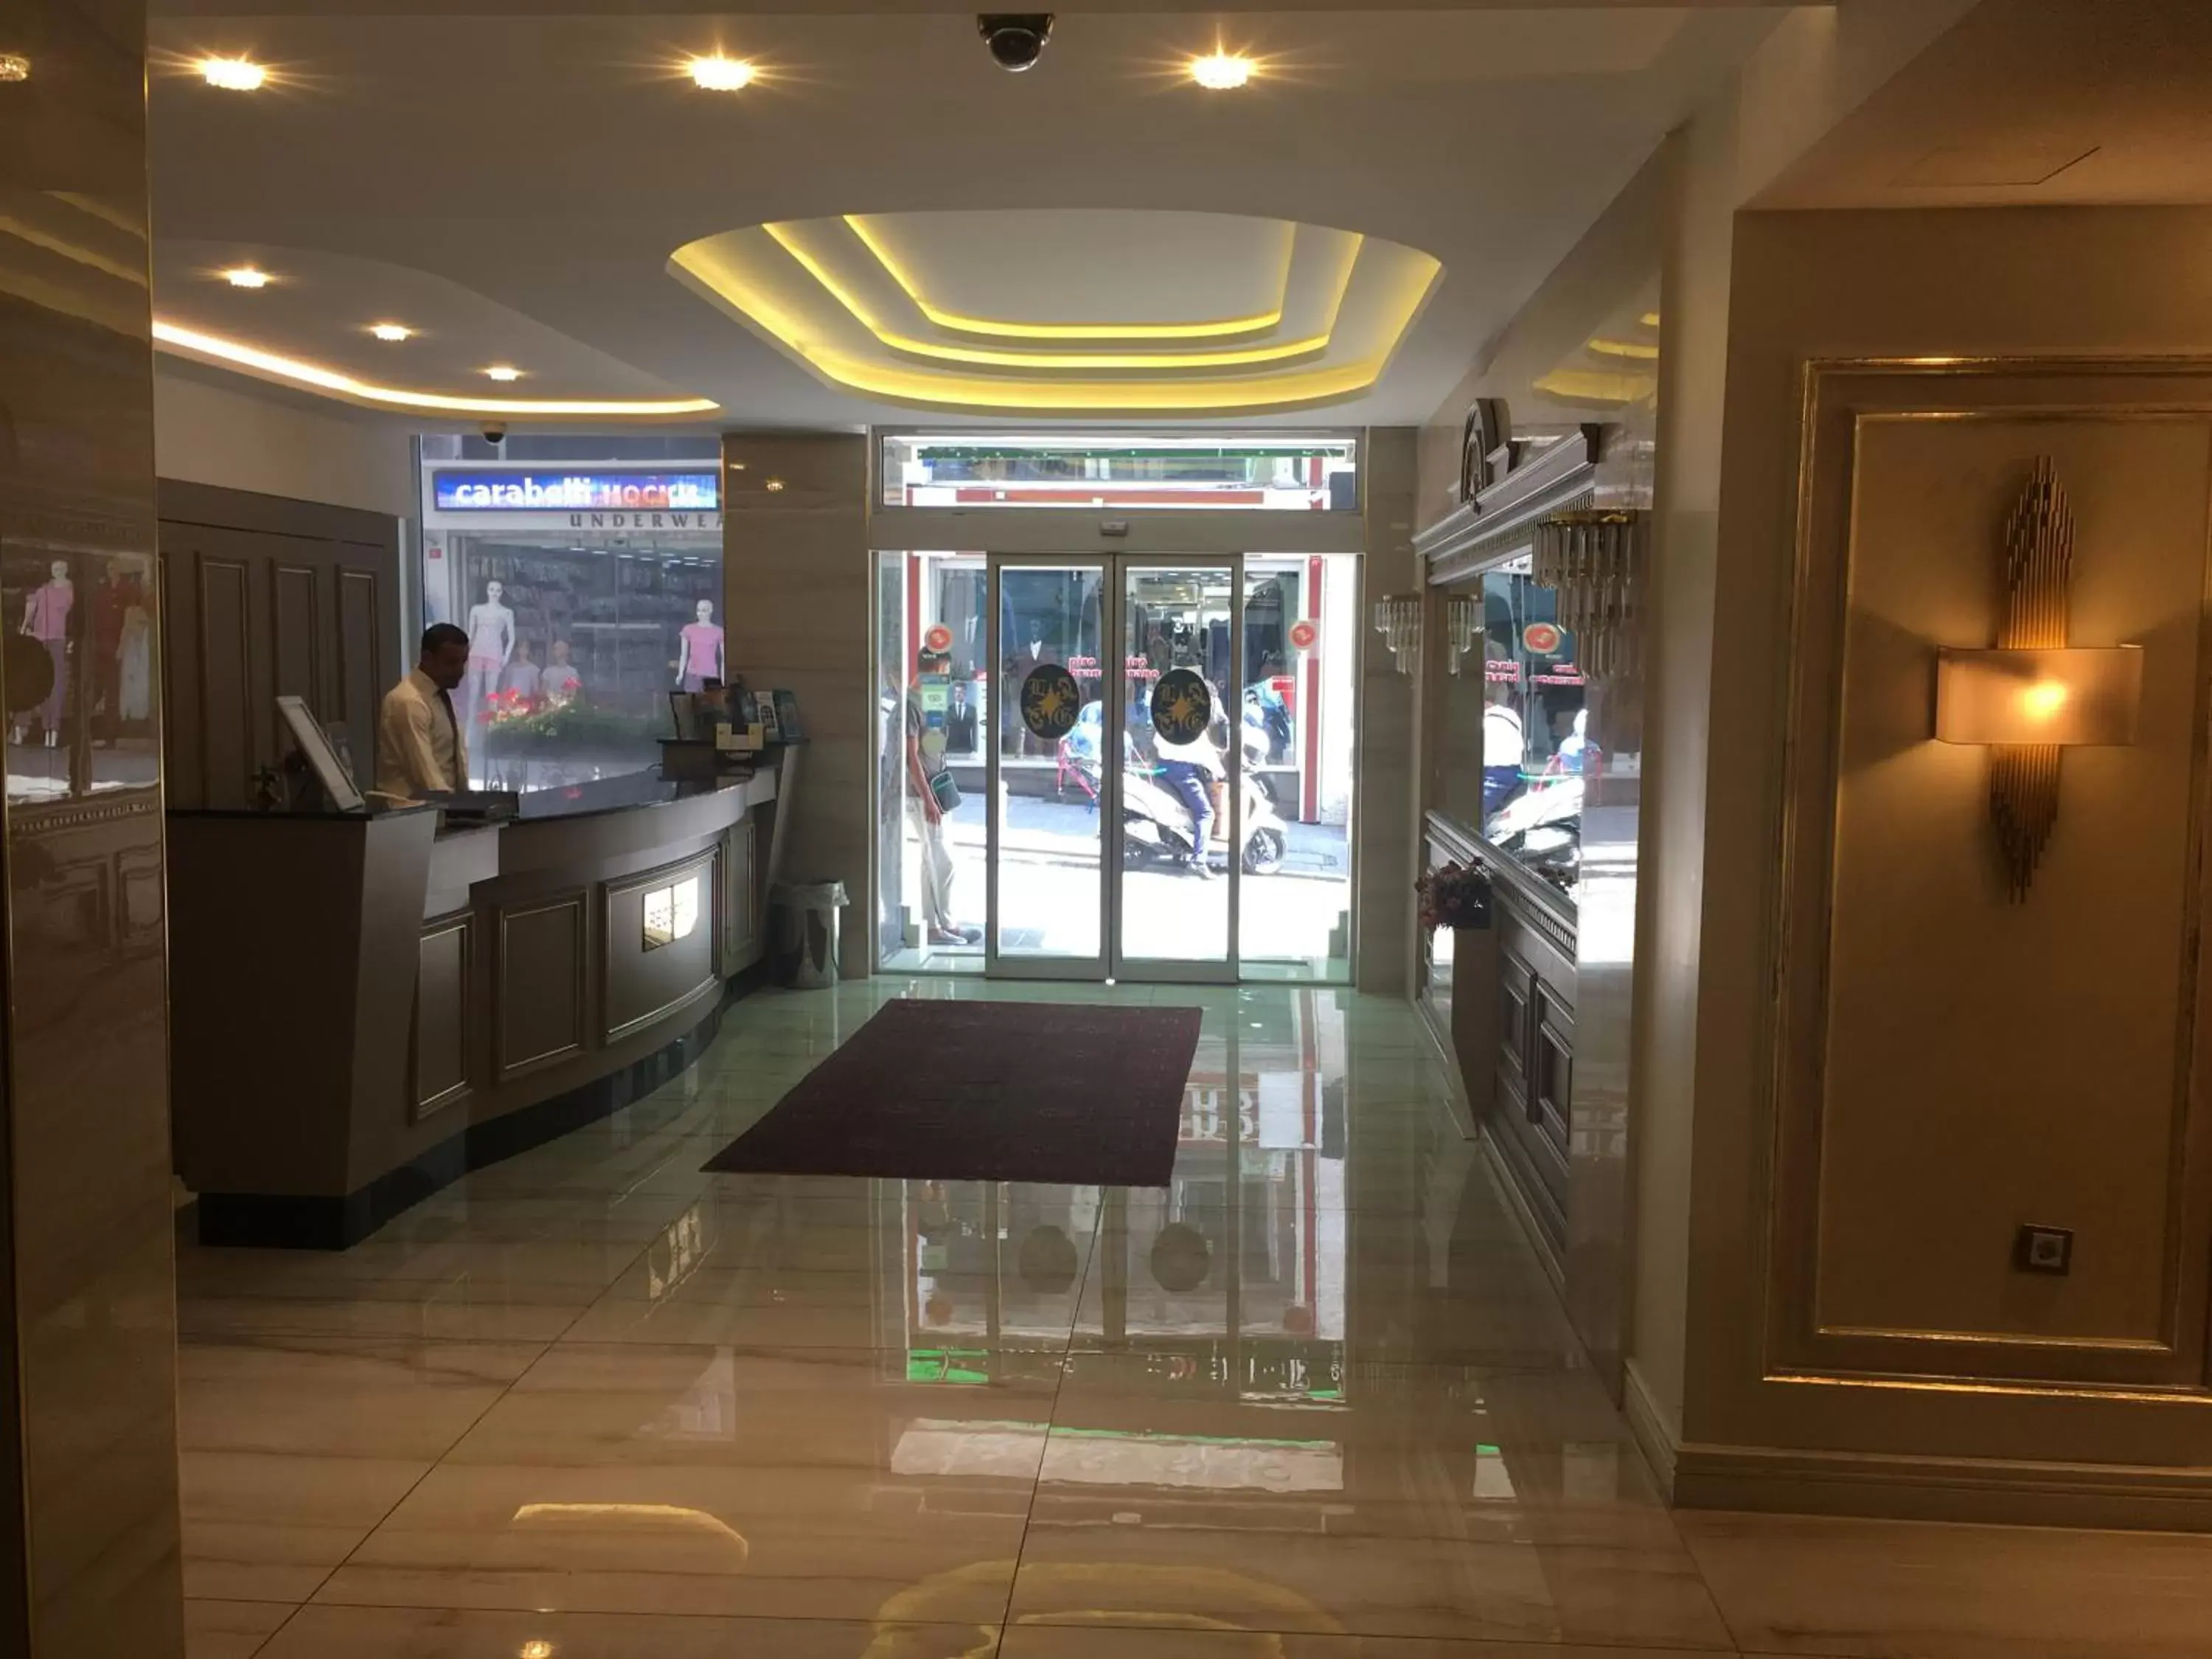 Lobby or reception in Laleli Gonen Hotel